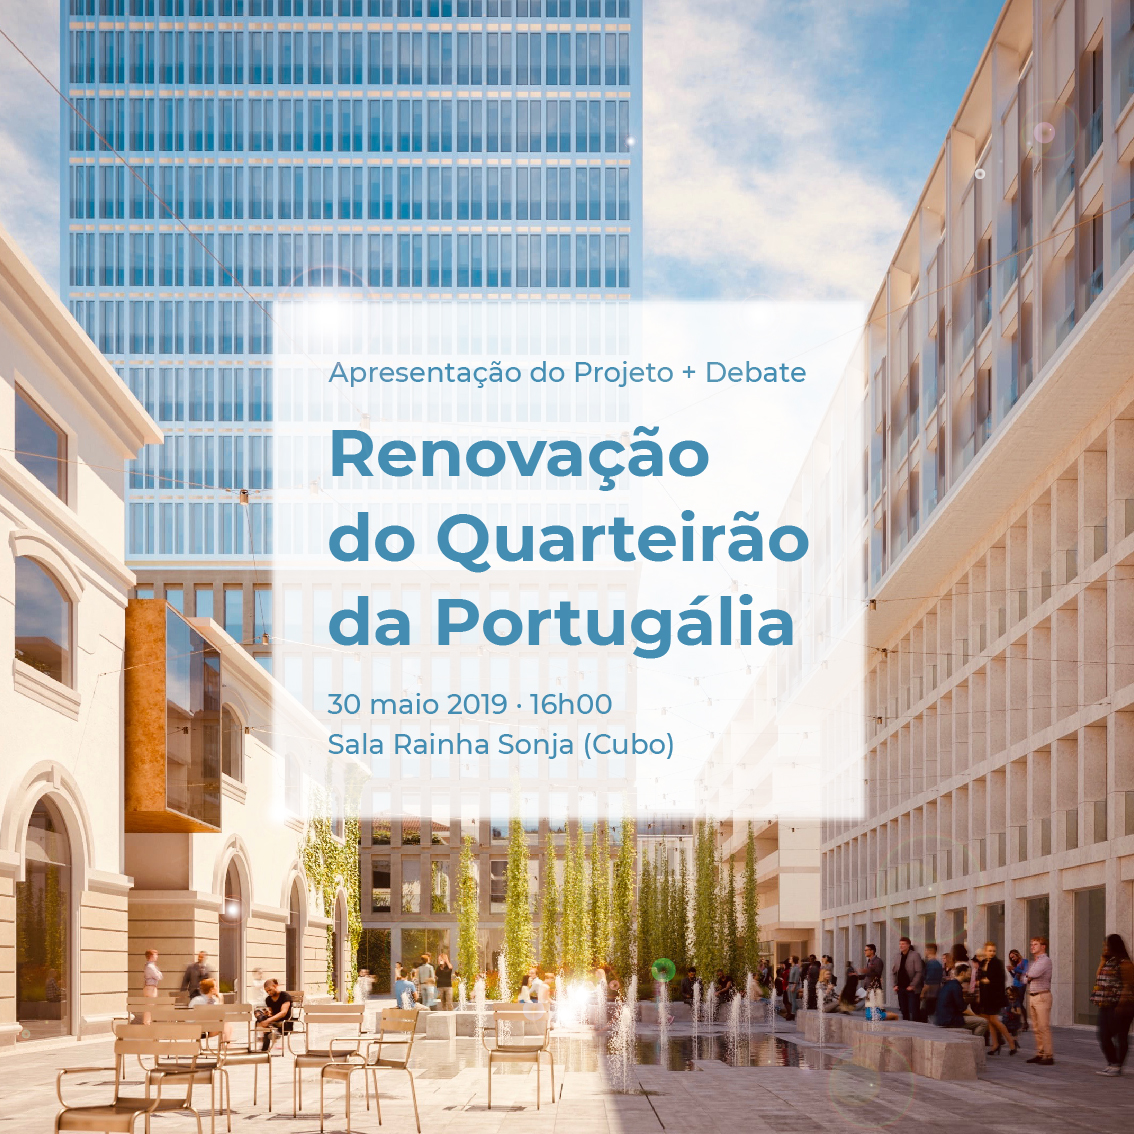 Renovação do Quarteirão da Portugália: Apresentação do Projeto + Debate 